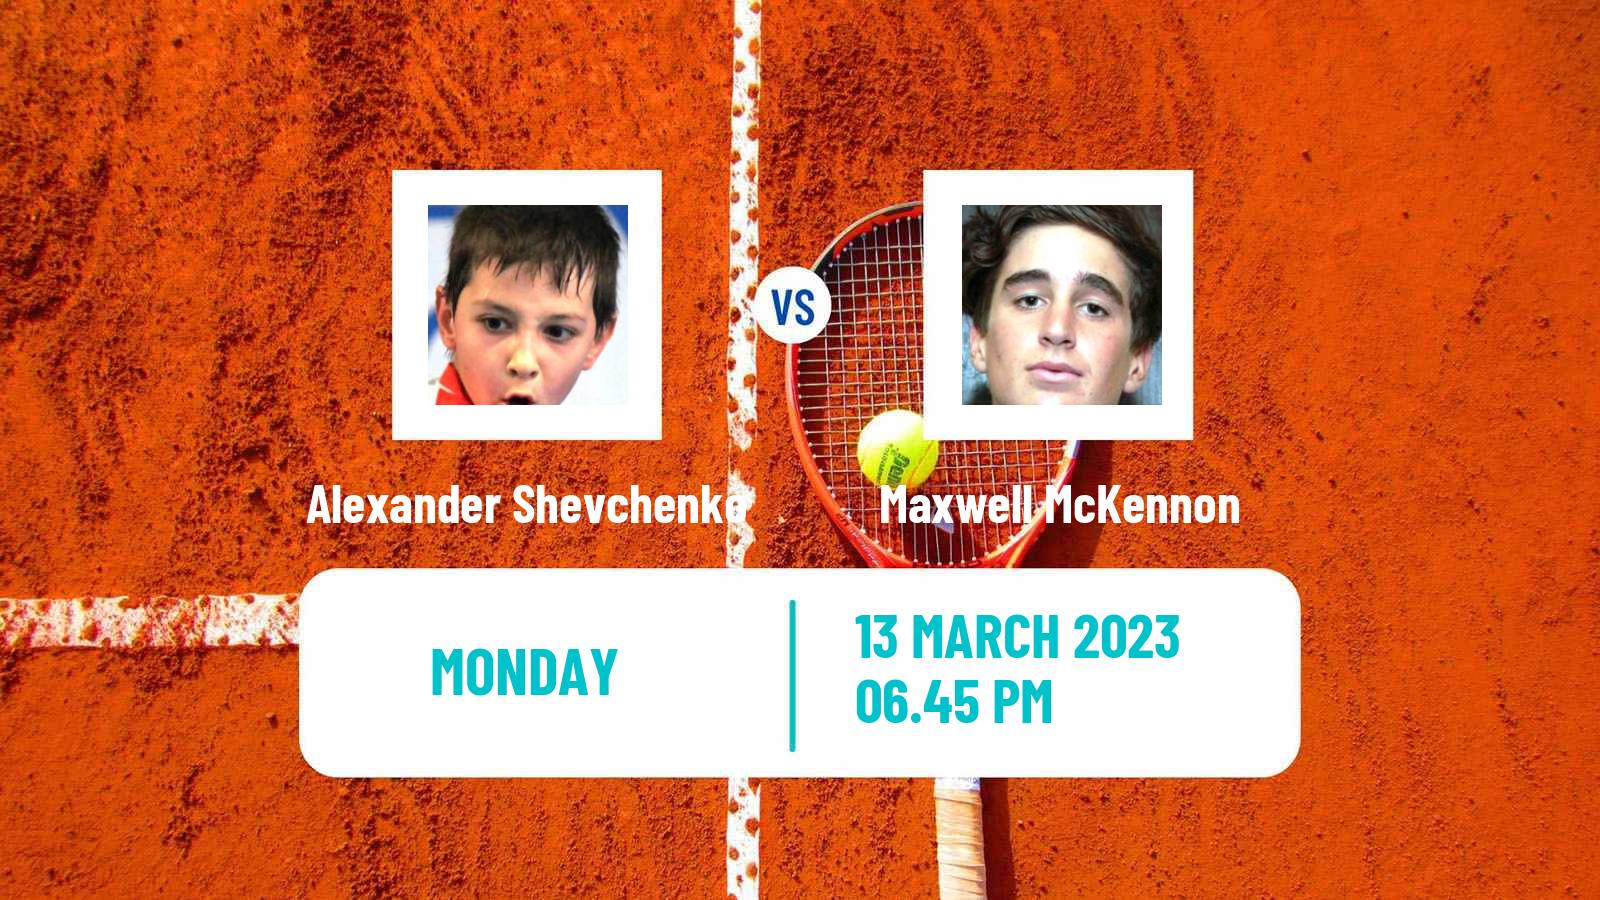 Tennis ATP Challenger Alexander Shevchenko - Maxwell McKennon